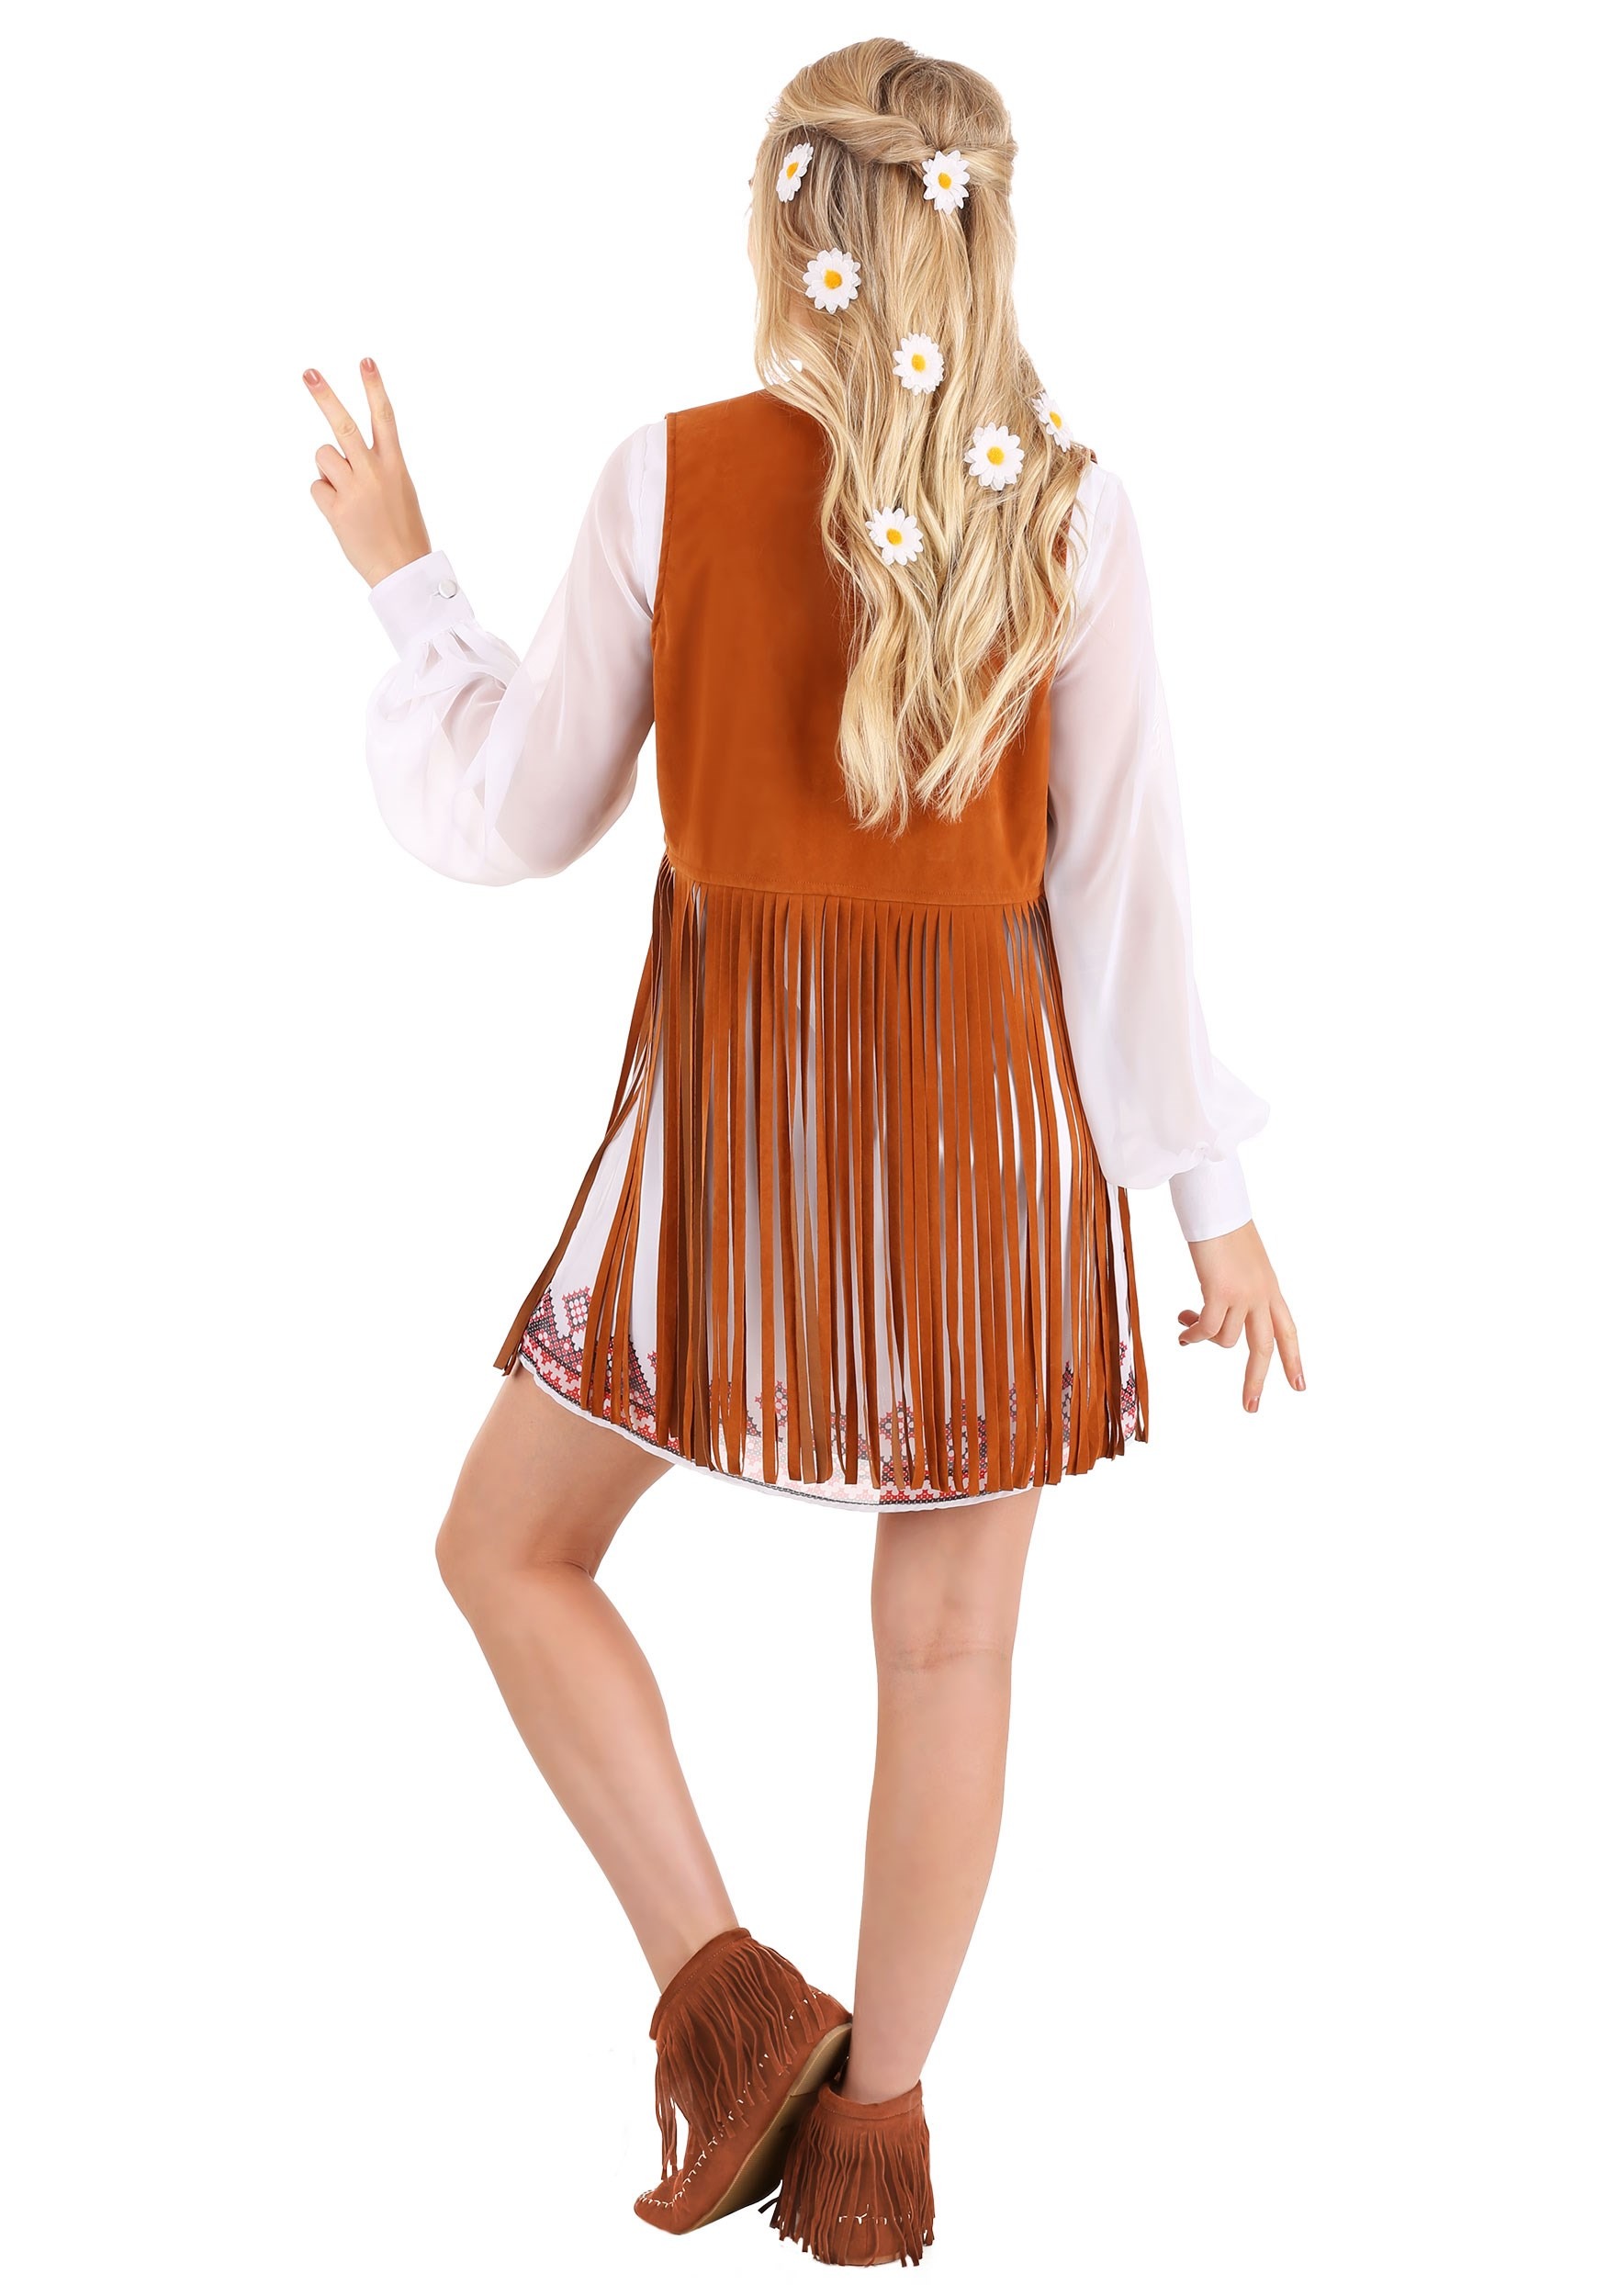 70s Free Spirit Costume For Women